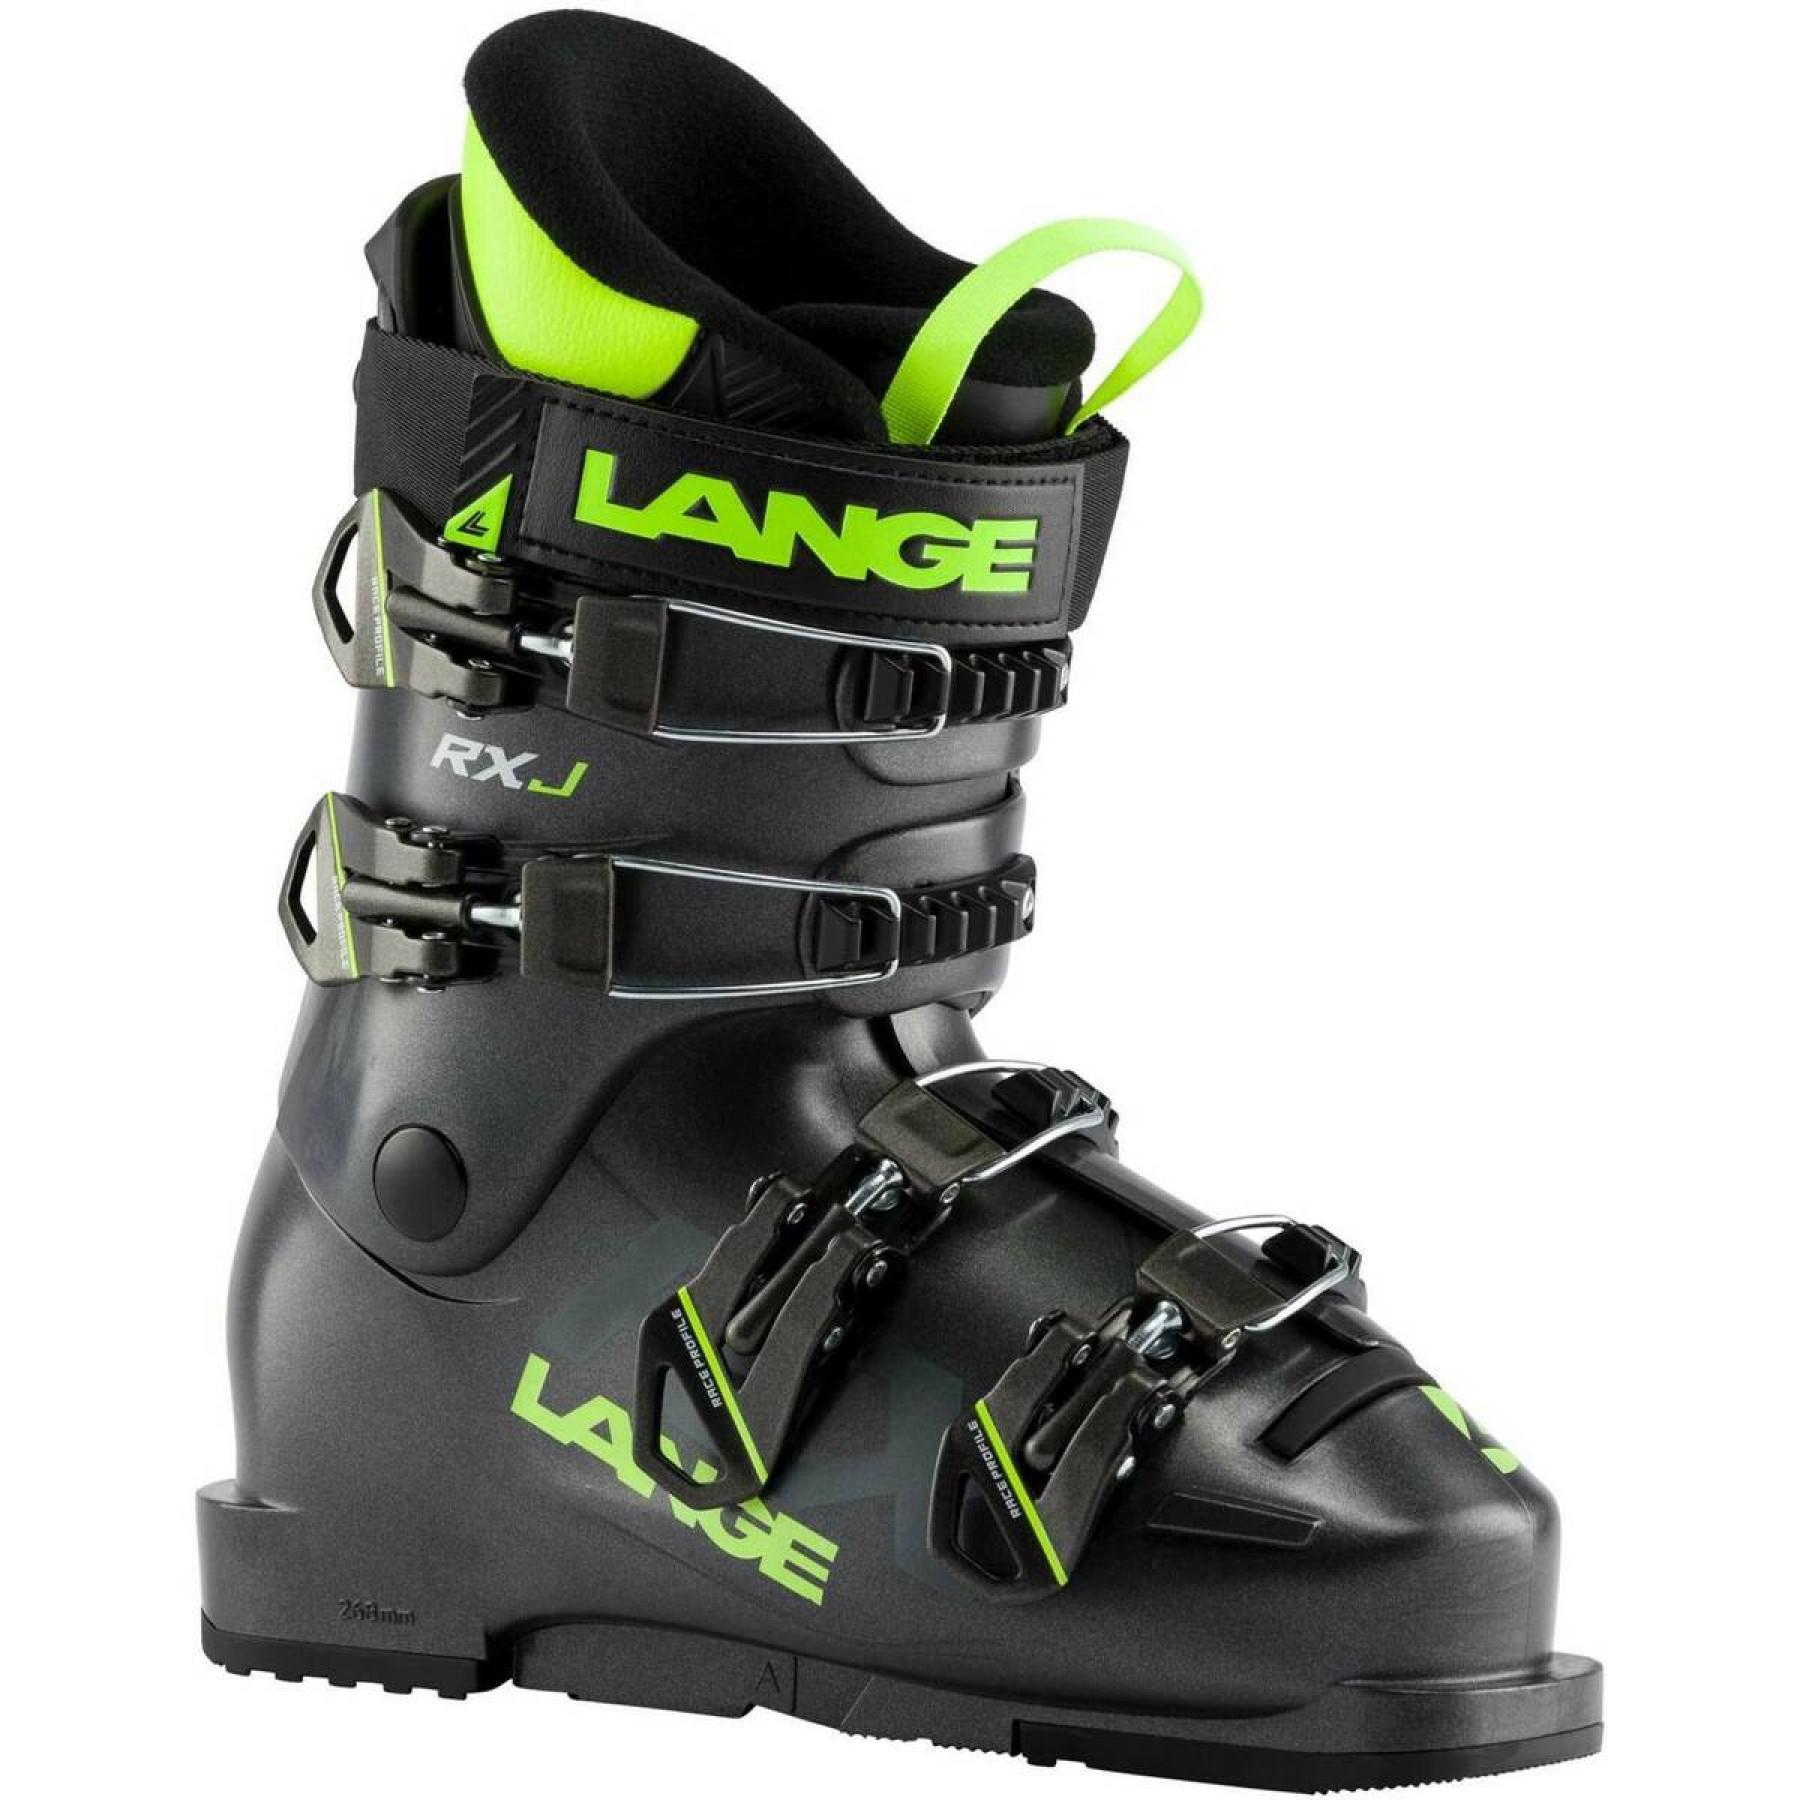 Chaussures de ski enfant Lange rxj